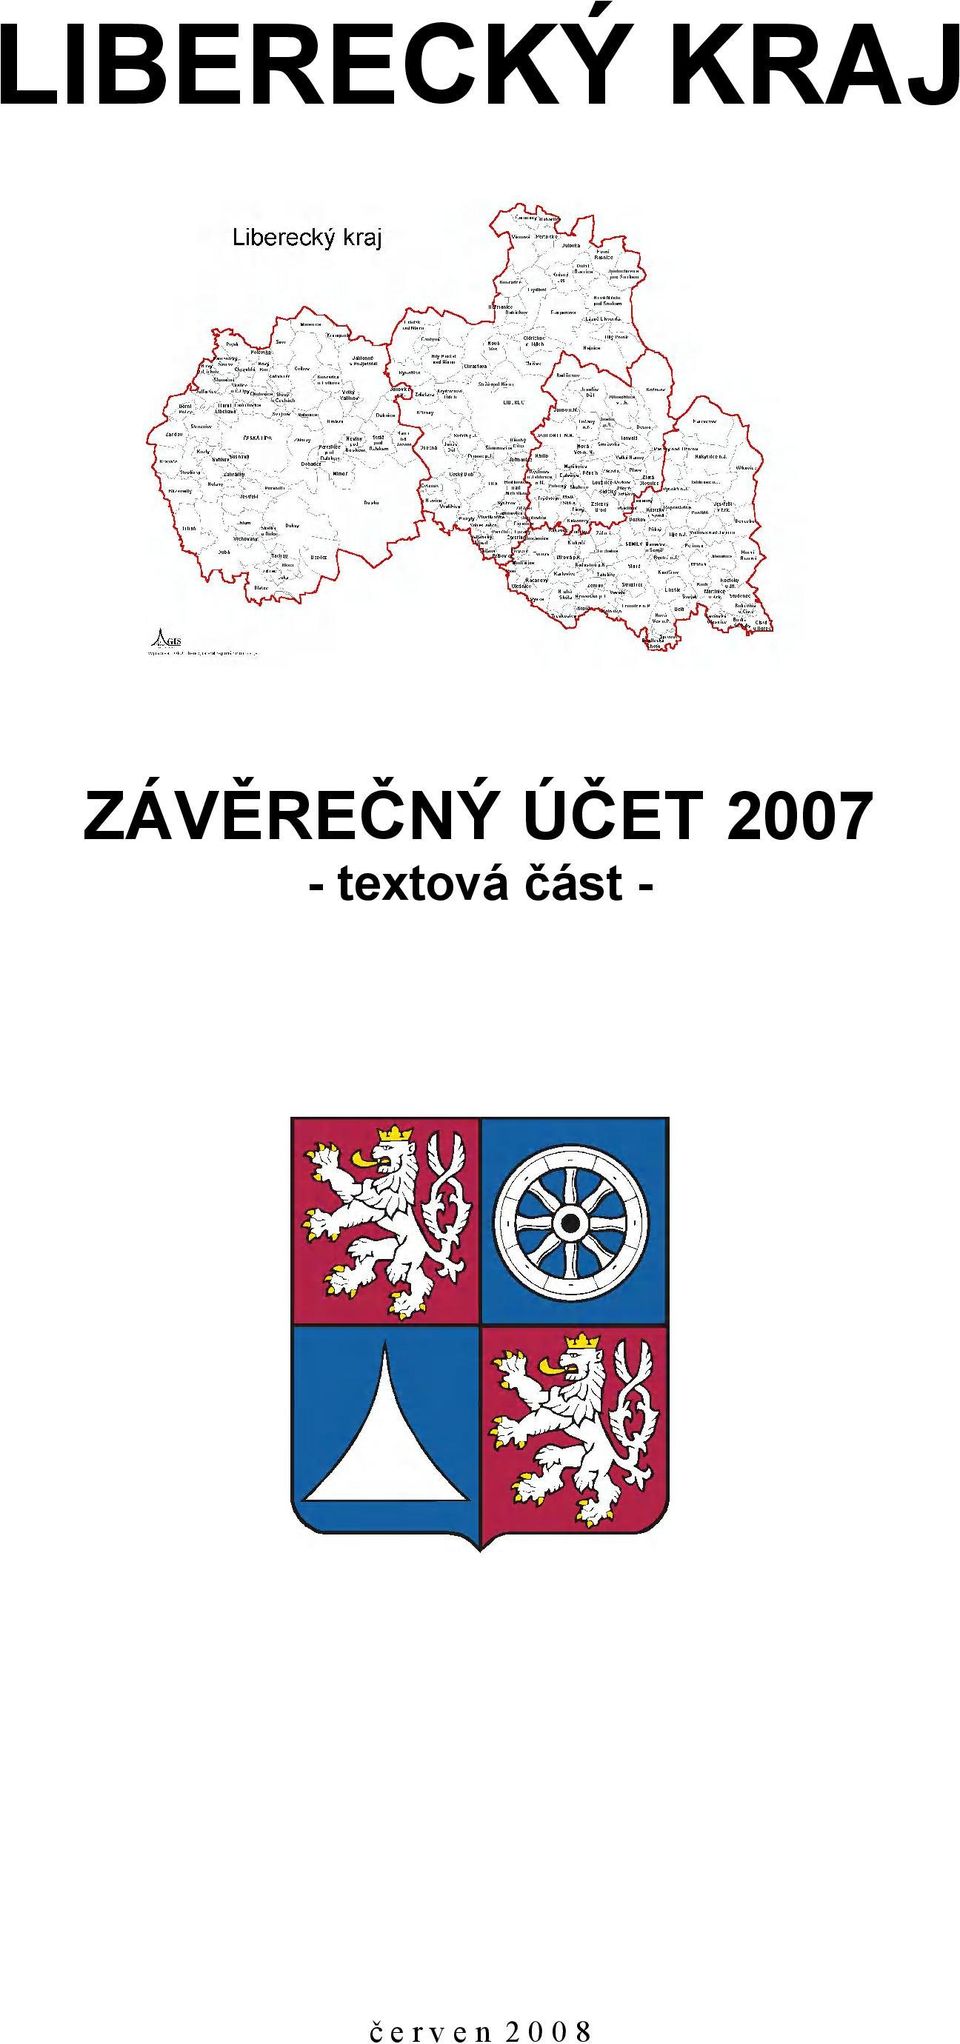 2007 - textová